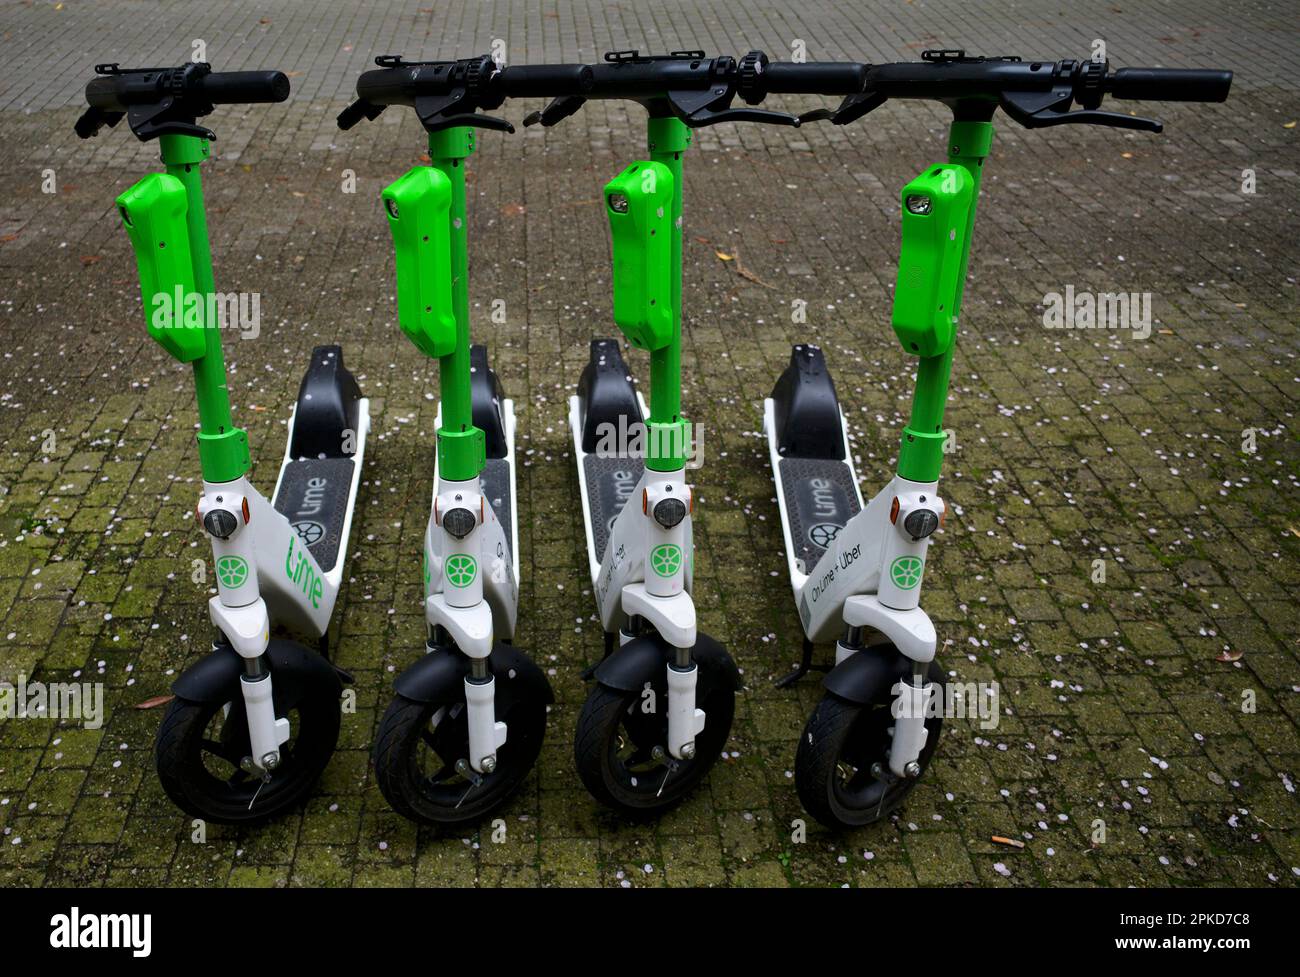 Quattro scooter elettrici parcheggiati nel noleggio bici della società Lime, Onlime + Uber, Stoccarda, Baden-Wuerttemberg, Germania Foto Stock